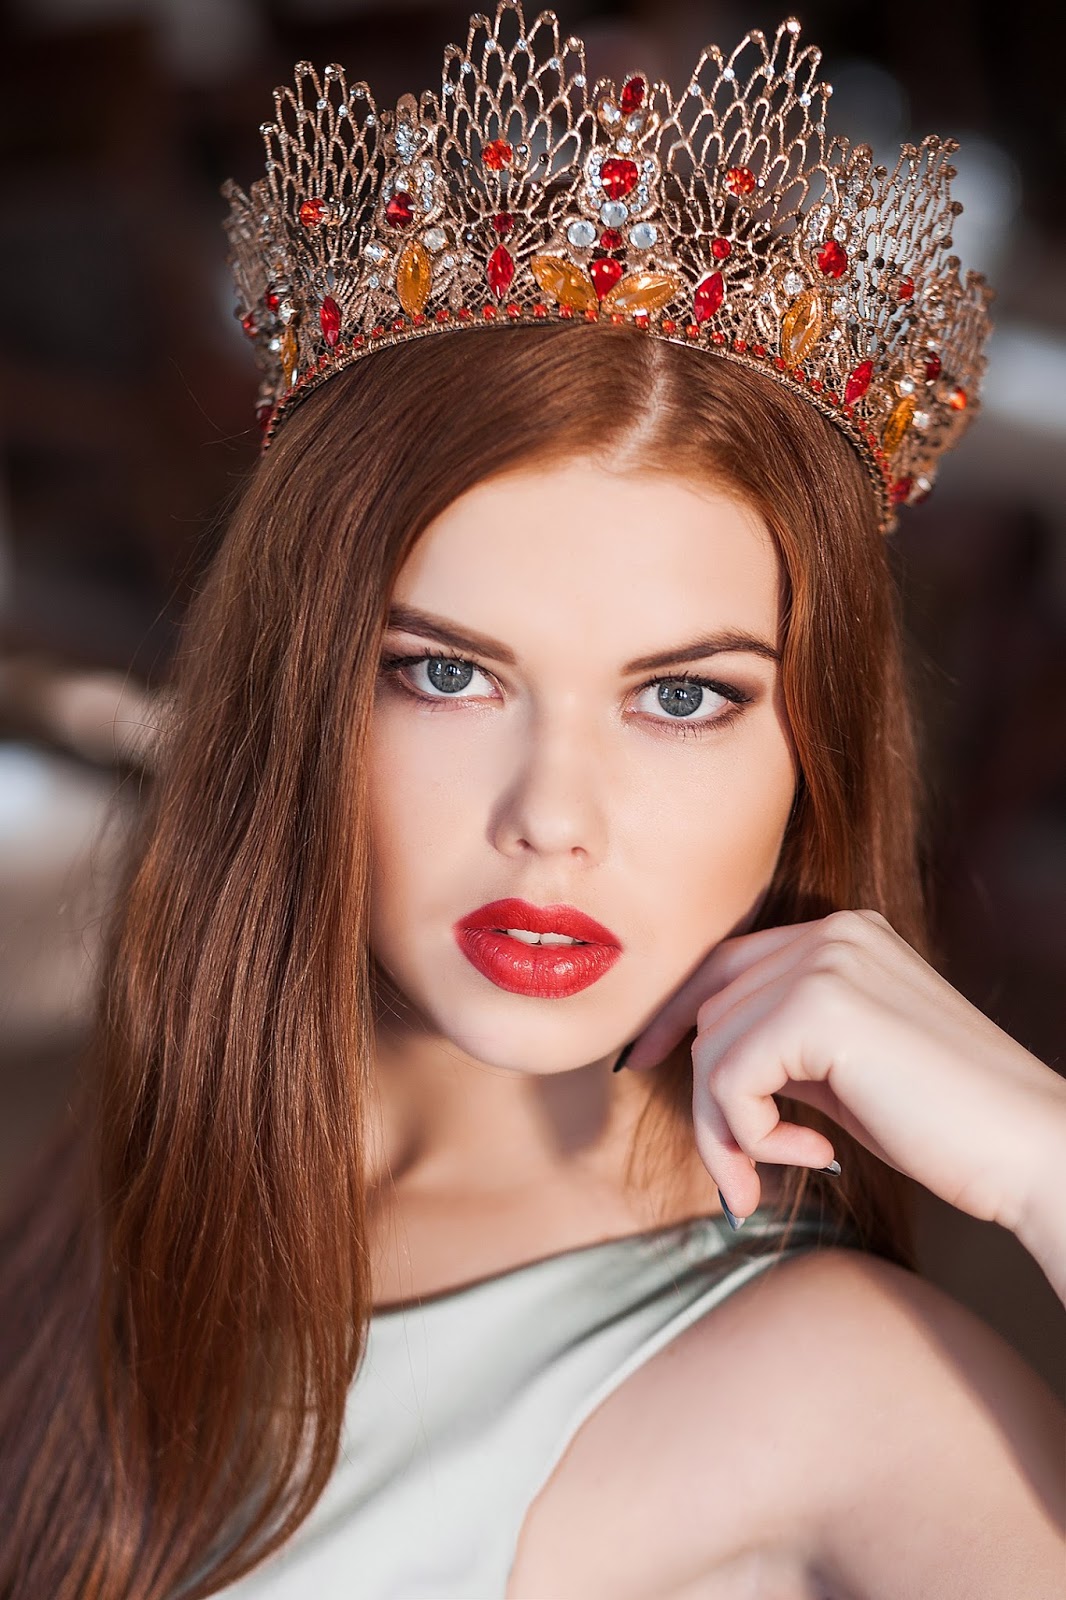 Beautiful Women from Ukraine: Meet Olya Zavalyuk